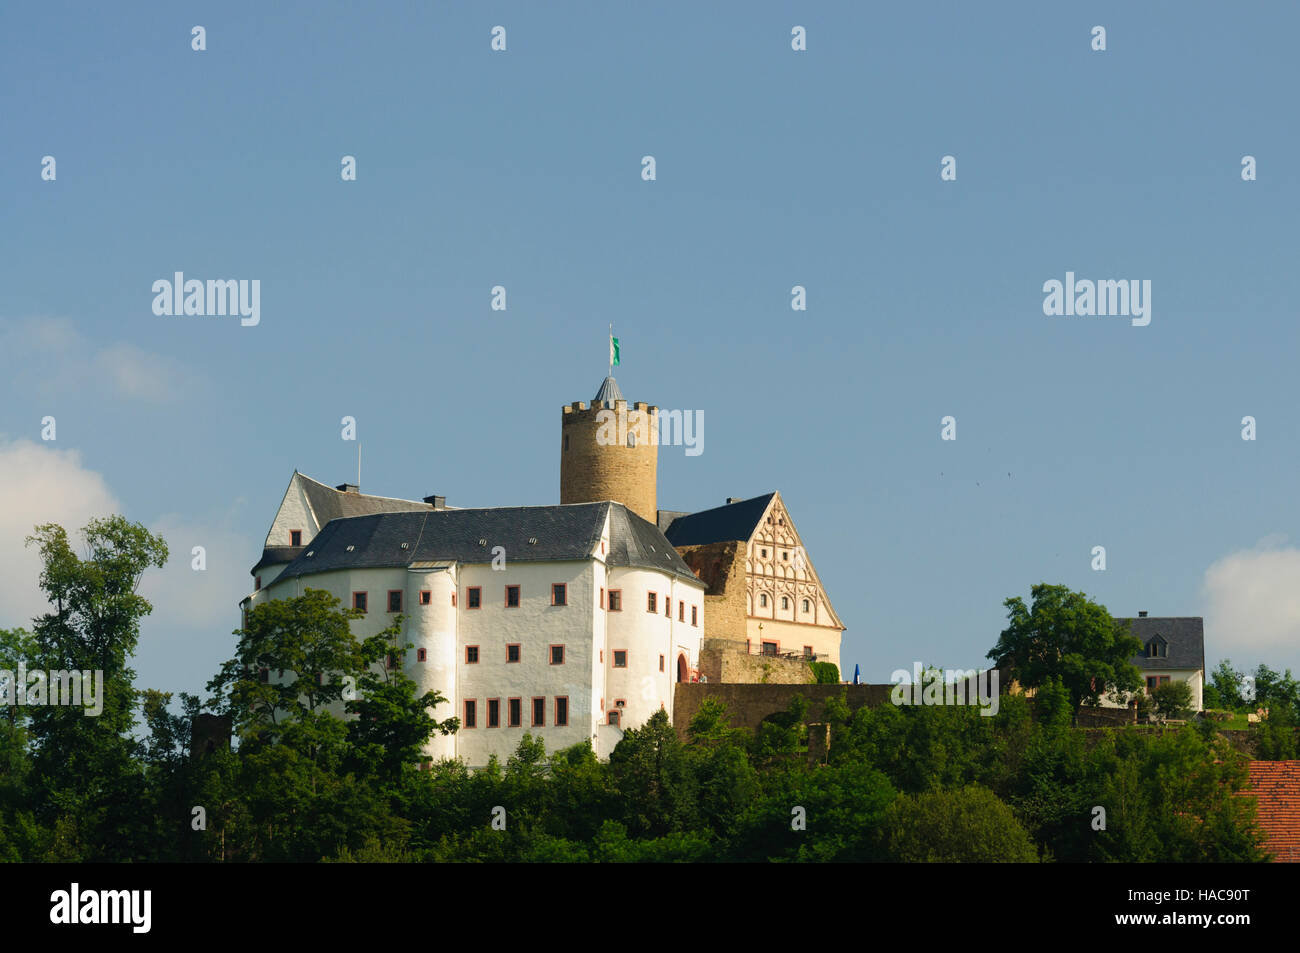 Drebach: Castle Scharfenstein, Erzgebirge, Ore Mountains, Sachsen, Saxony, Germany Stock Photo